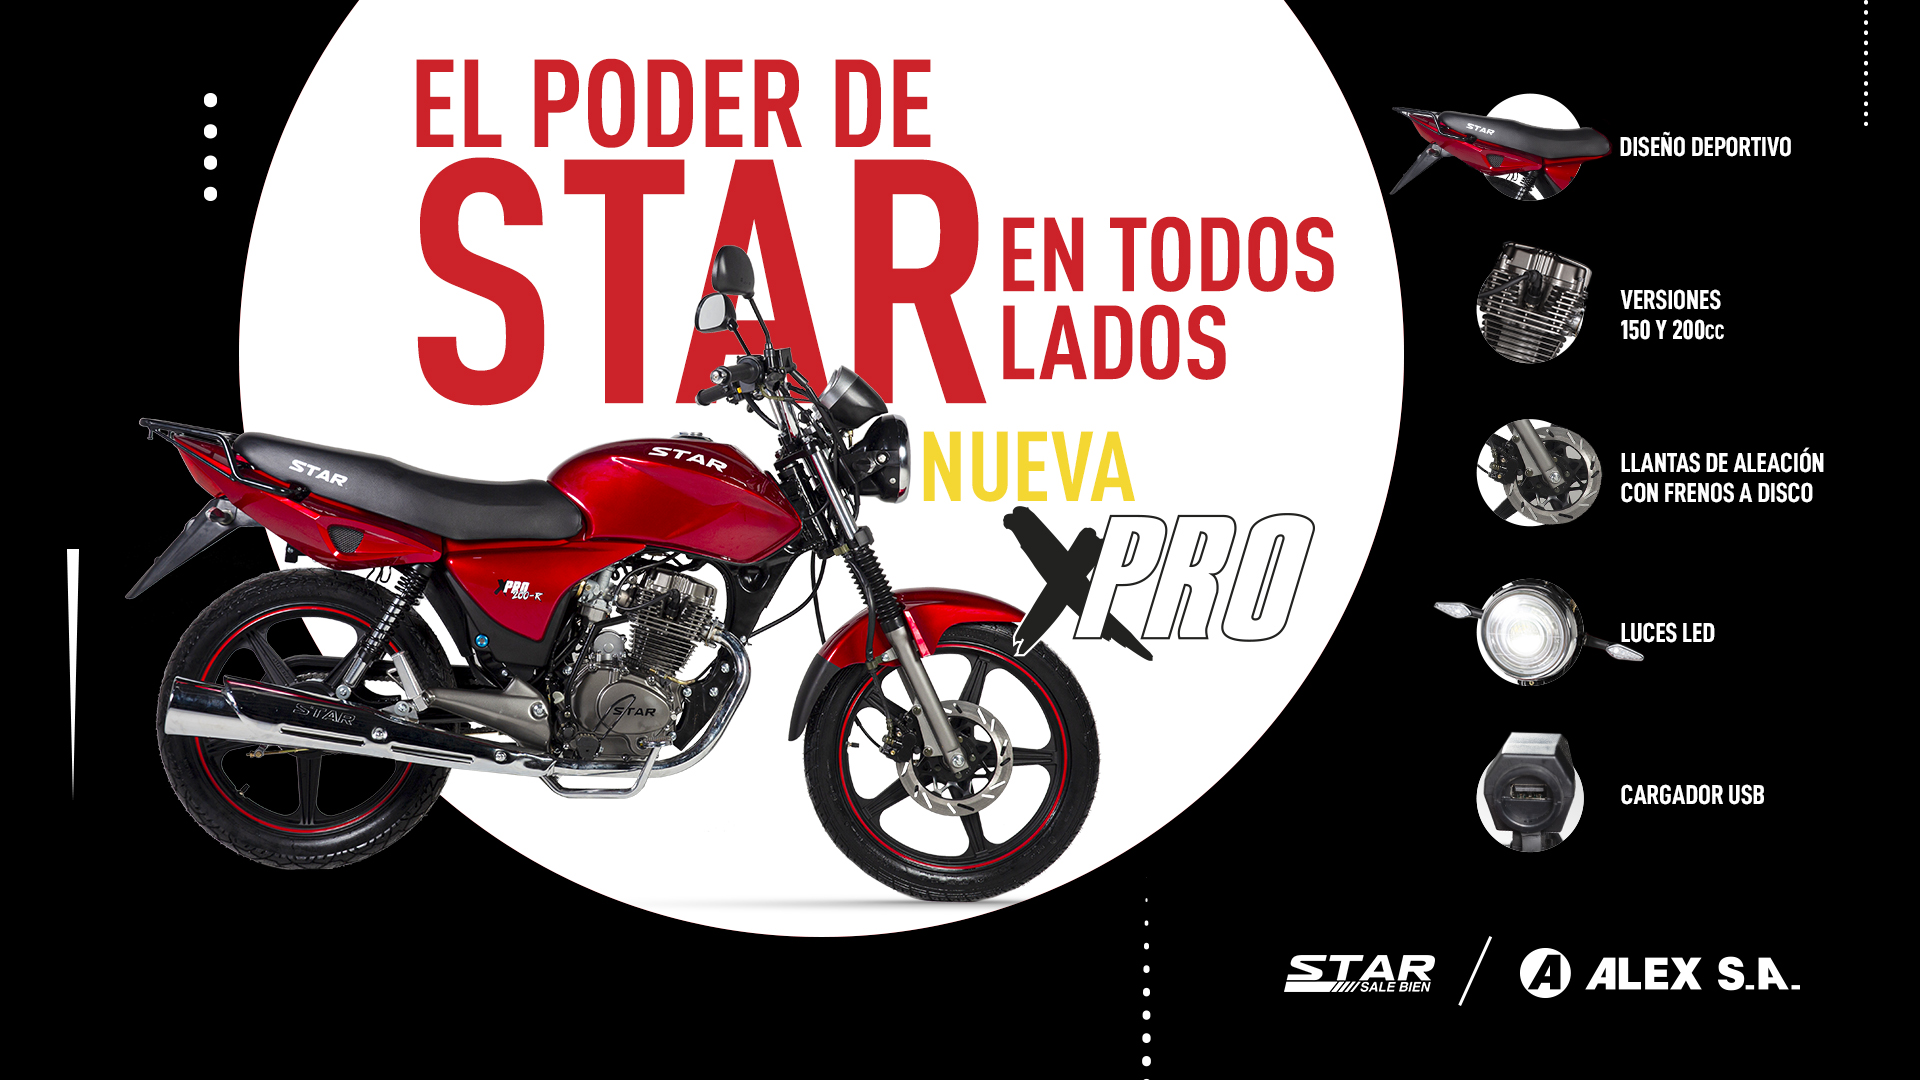 Afiche de nuevo modelo de moto STAR XPRO.